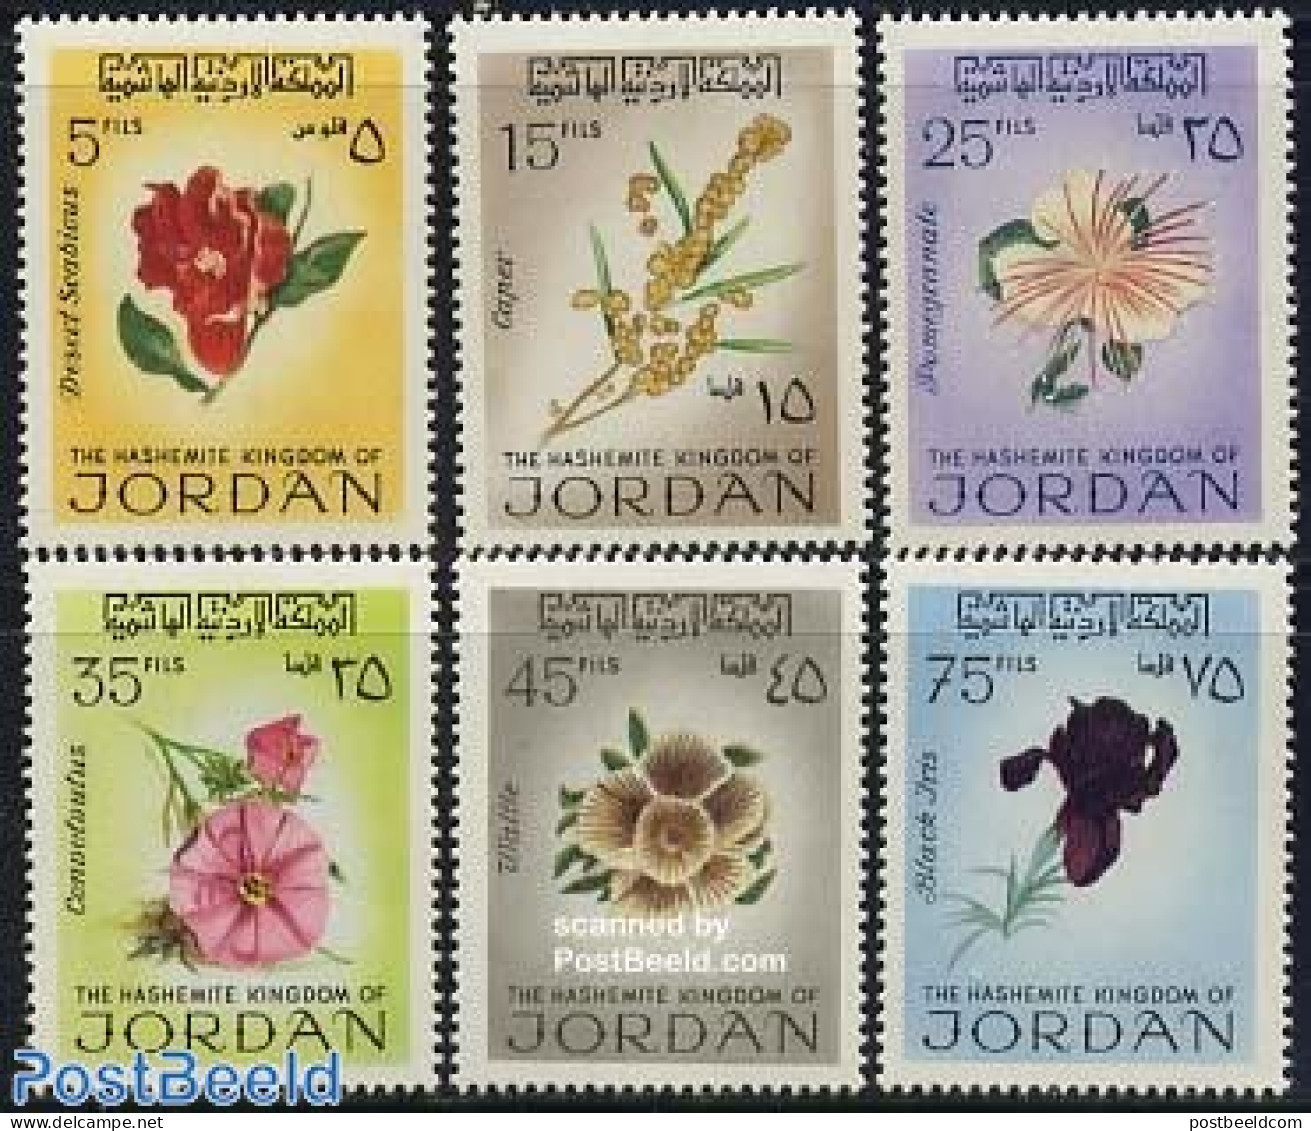 Jordan 1970 Flowers 6v, Mint NH, Nature - Flowers & Plants - Jordan